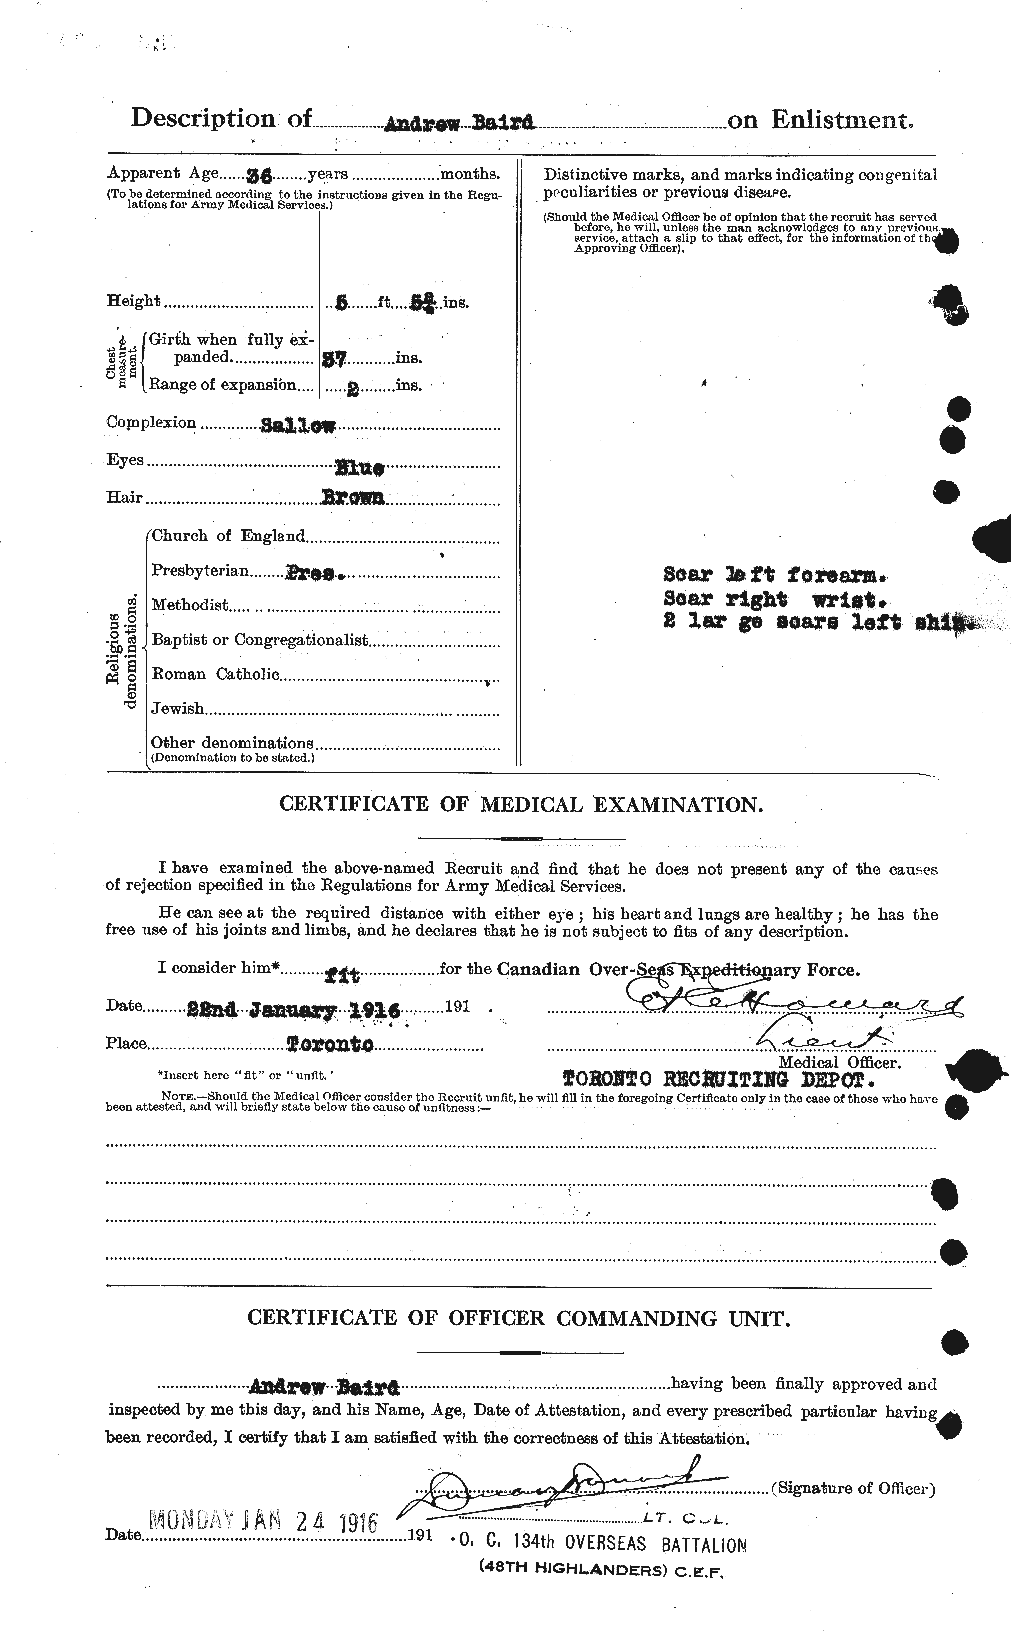 Dossiers du Personnel de la Première Guerre mondiale - CEC 226732b